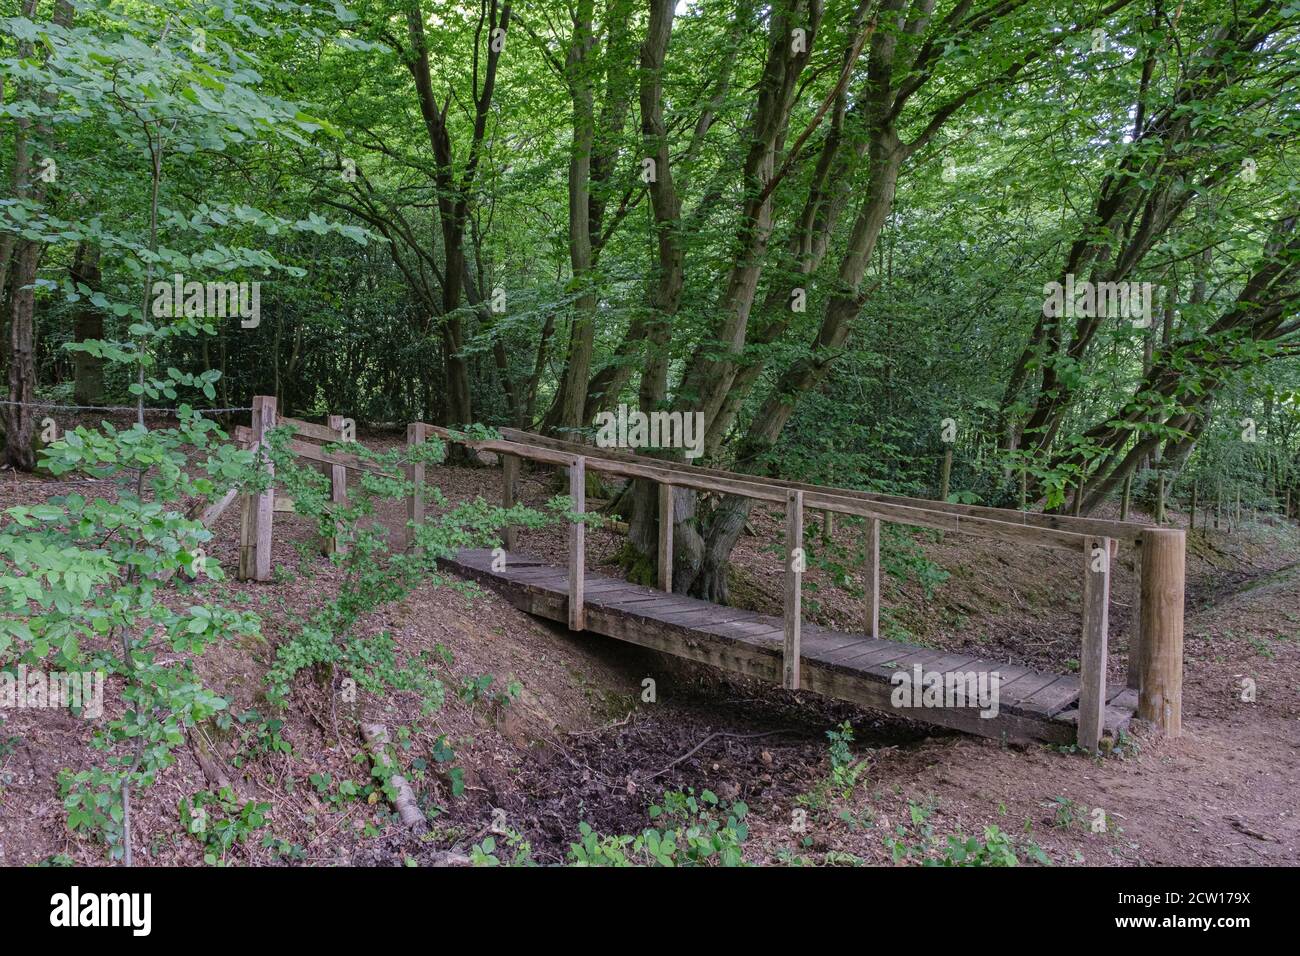 Un pont en bois rustique traverse un lit de ruisseau sec au milieu des bois avec arbres et feuillage. Réserve naturelle de Ruislip Woods, Hillingdon, Londres. Banque D'Images